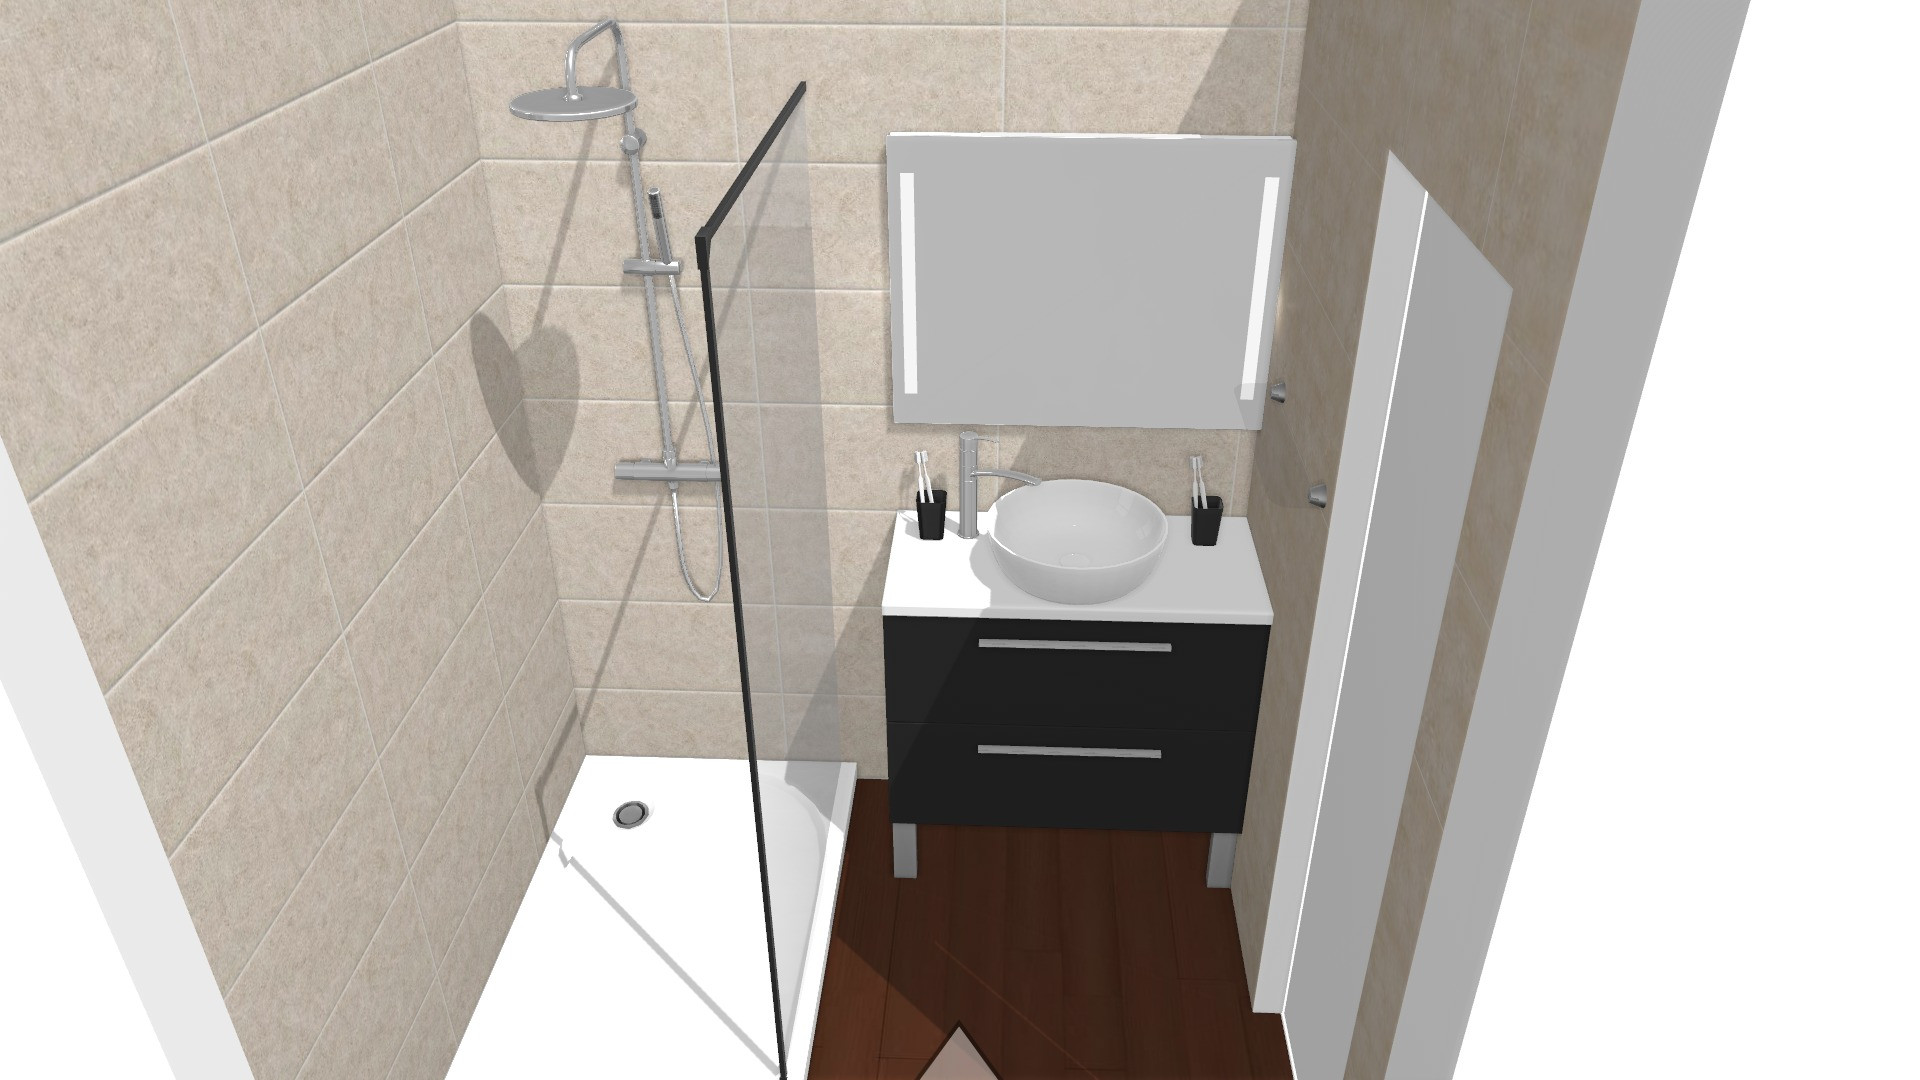 Salle de bain - Projection 3D vue face